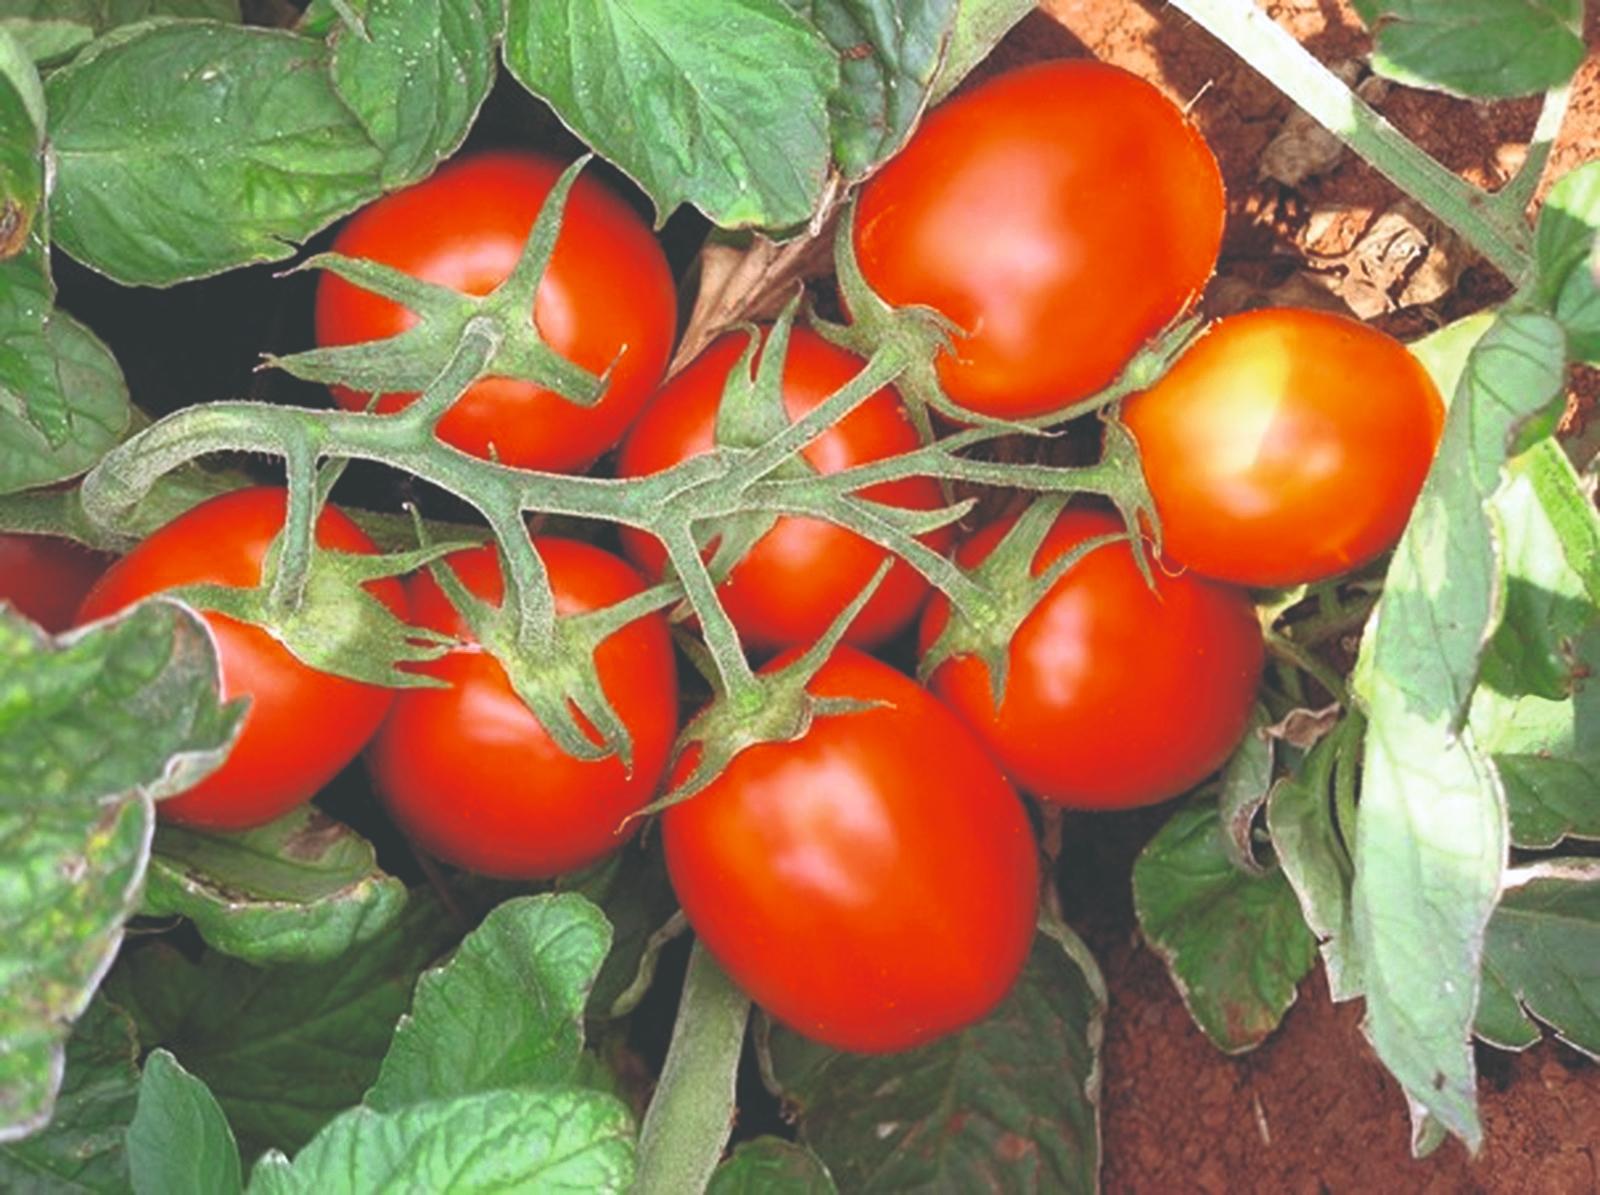 rajčice za industrijsku preradu